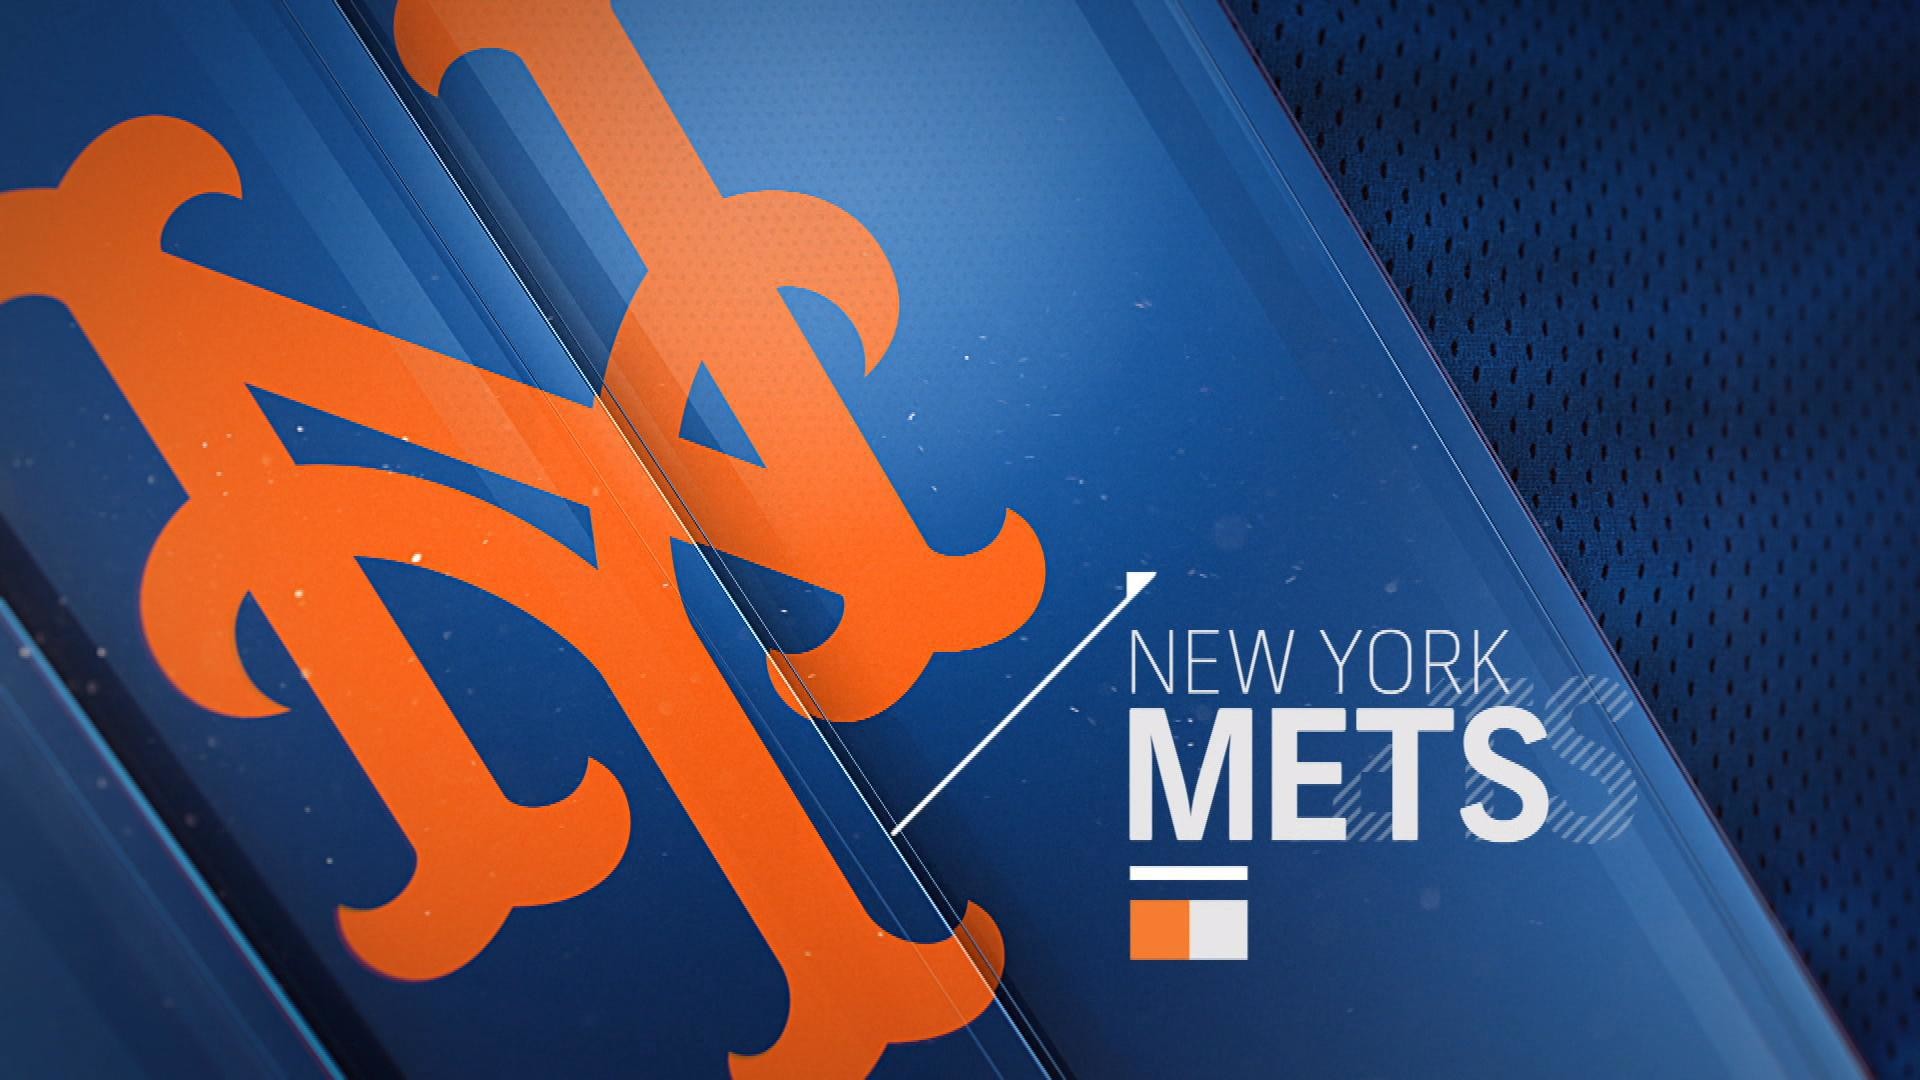 New York Mets Wallpaper.